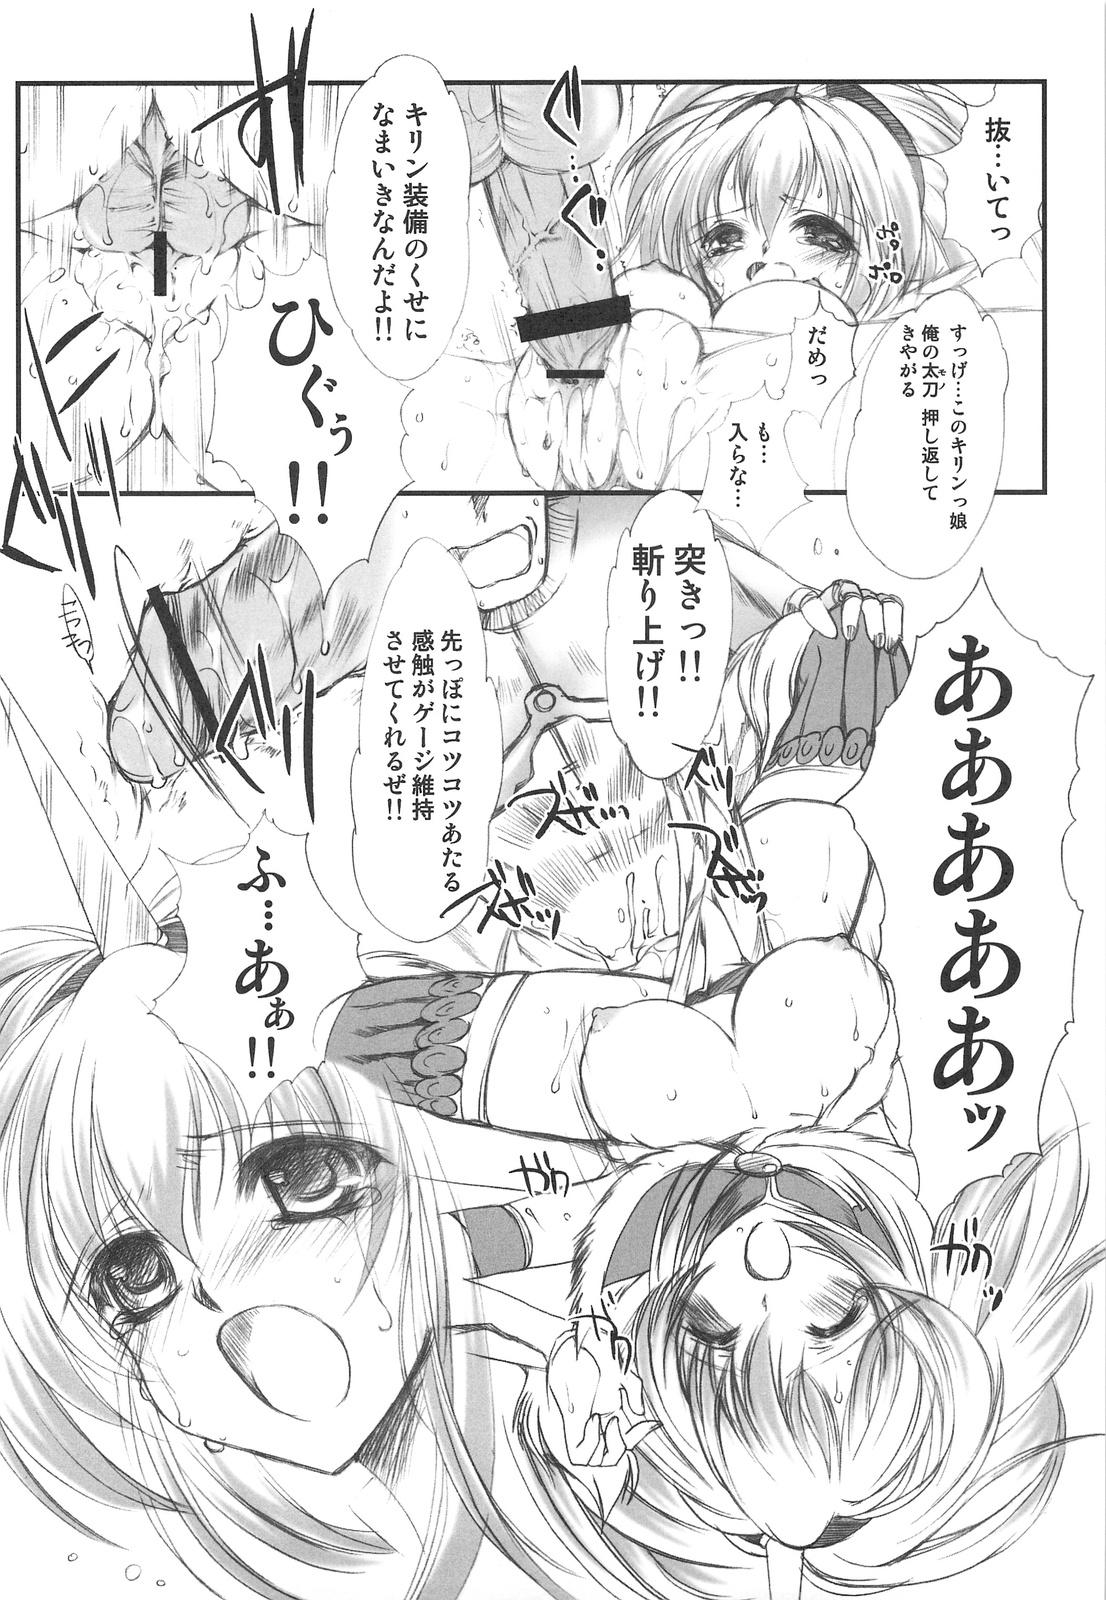 Chaturbate Hokaku no Tatsujin - Monster hunter Culos - Page 11